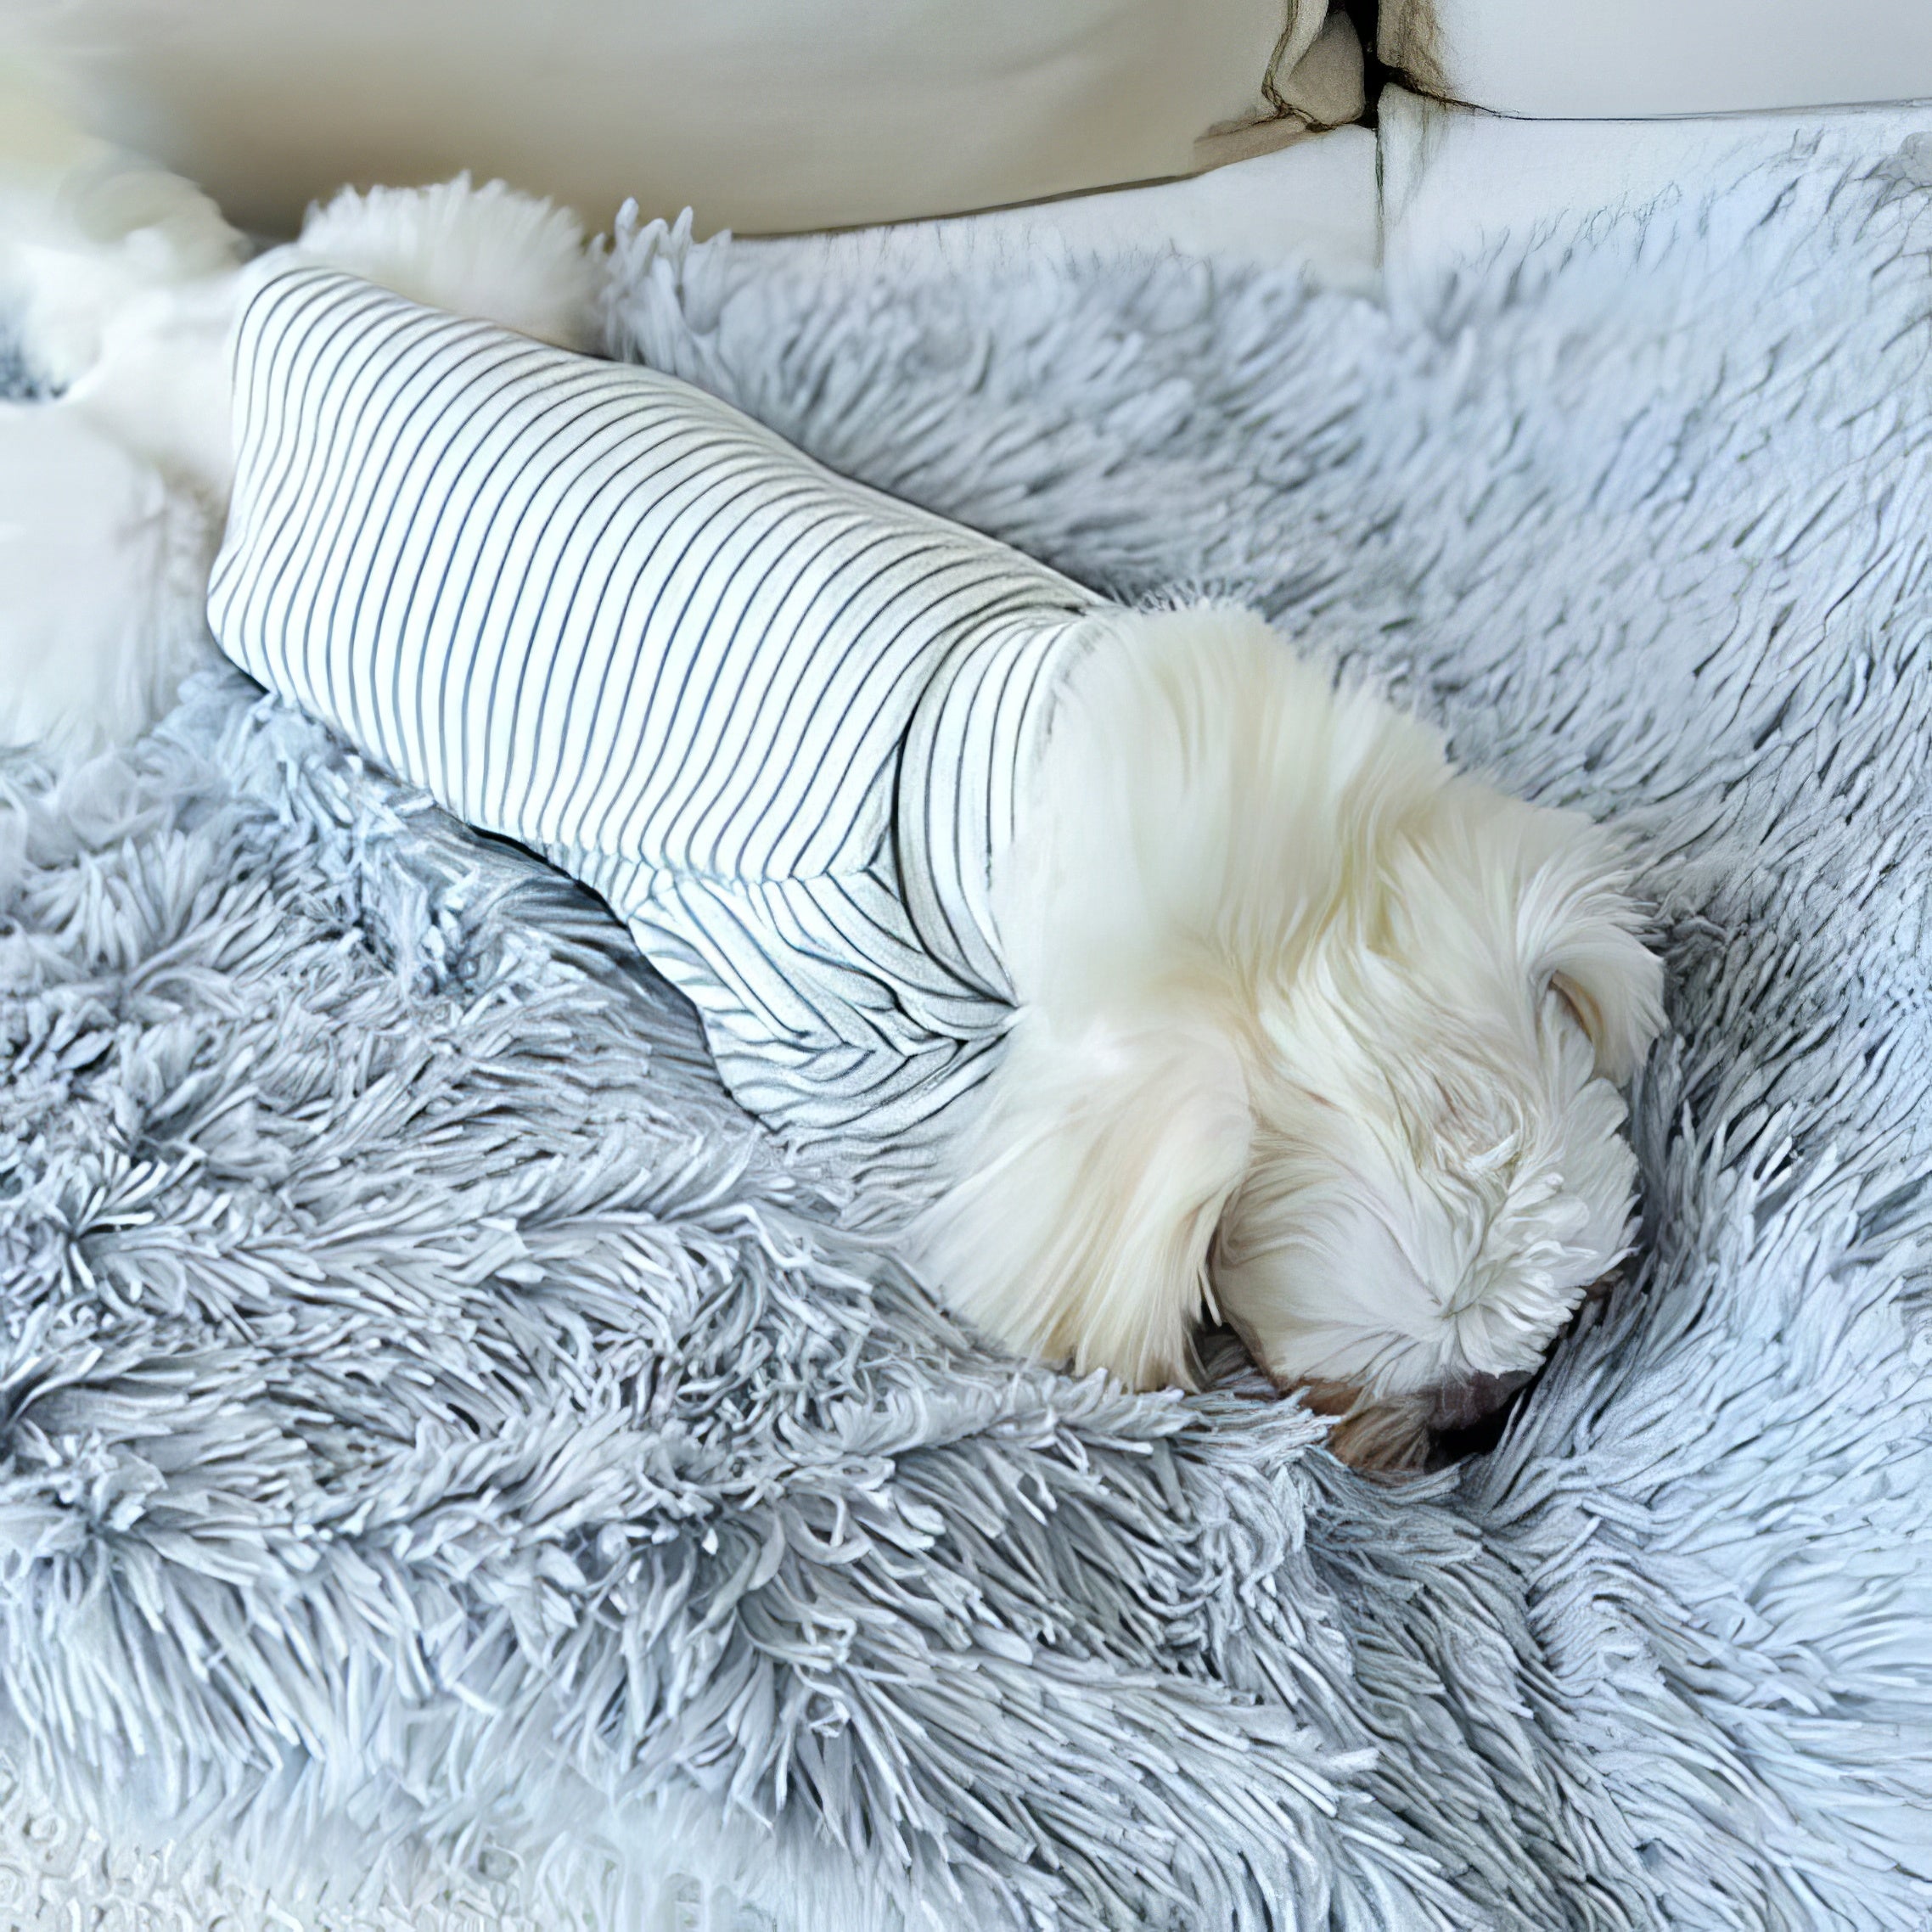 Fluffy Dog Blanket